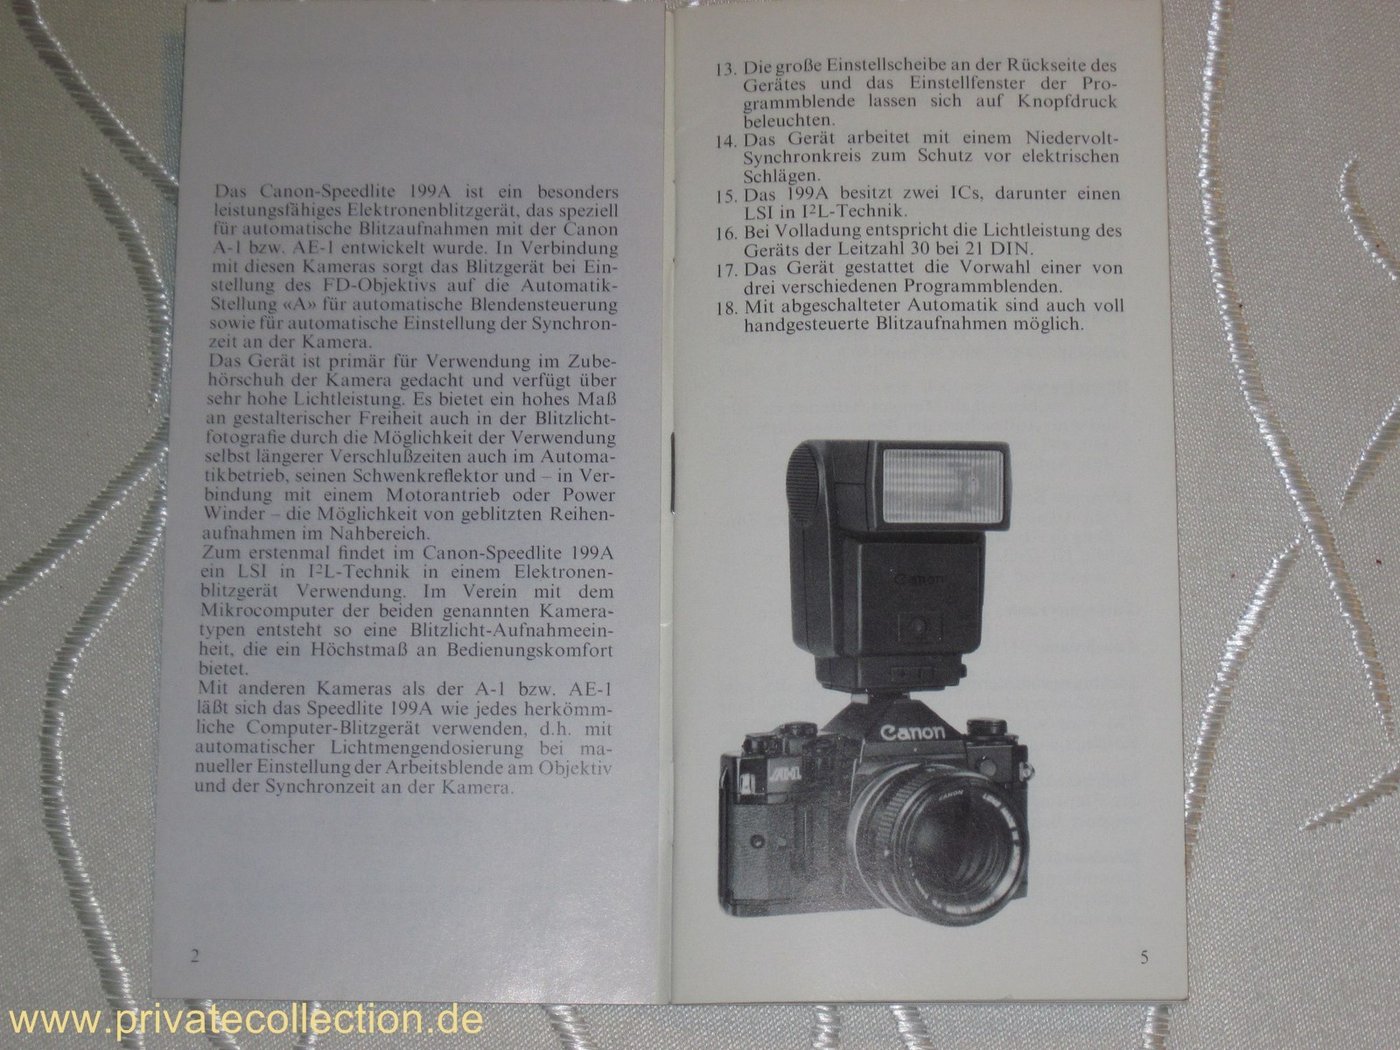 Canon speedlite 600ex-rt user manual pdf